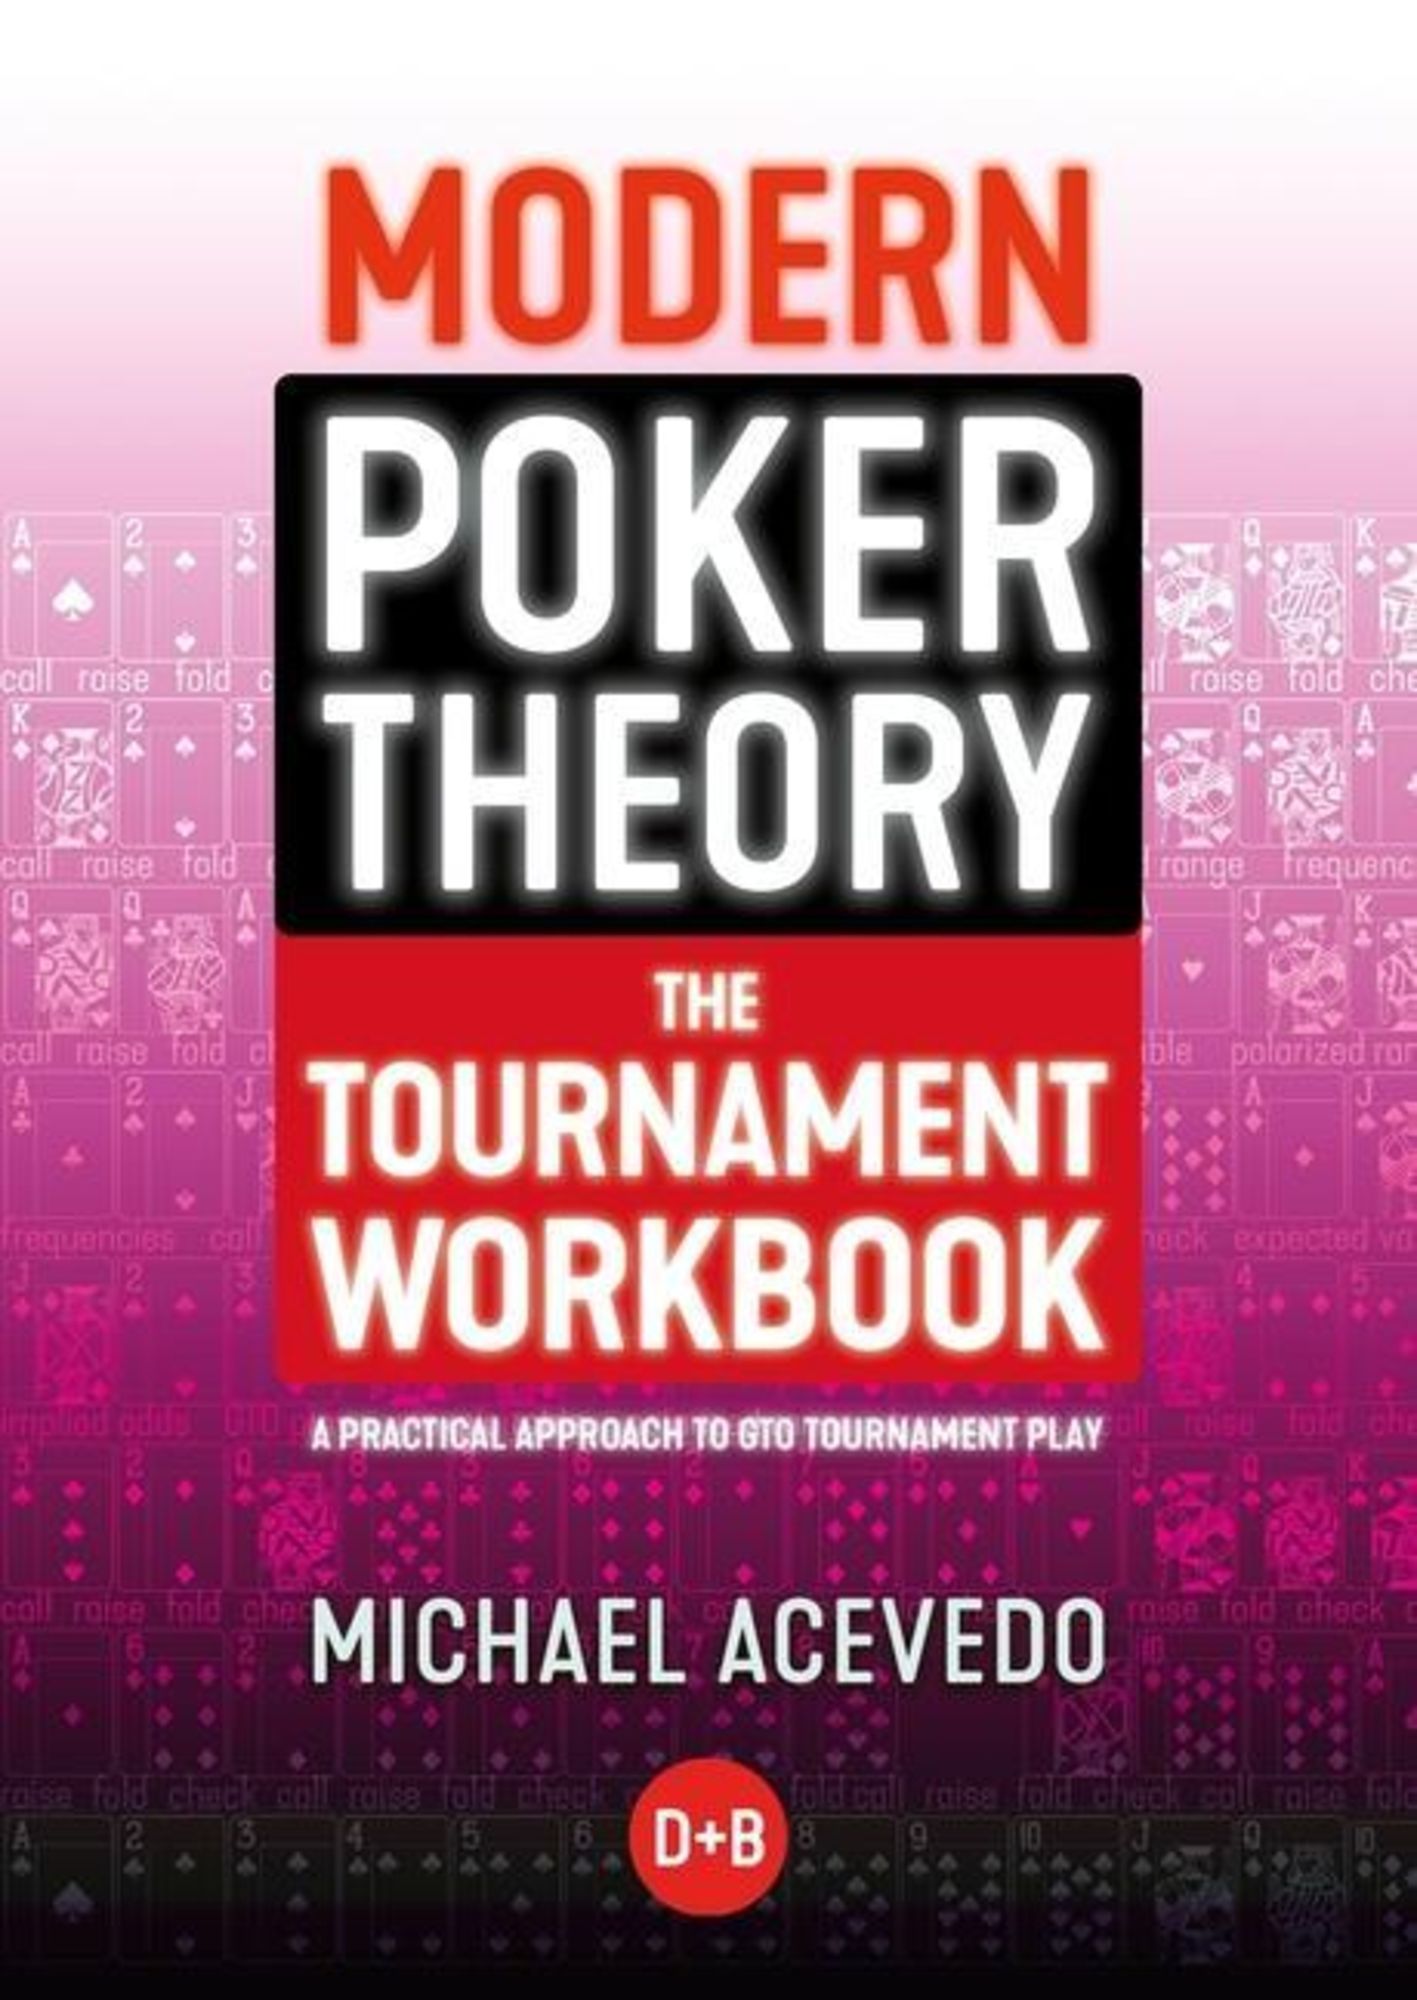 Modern Poker Theory - The Tournament Workbook' von 'Michael Acevedo' -  'Taschenbuch' - '978-1-912862-29-0